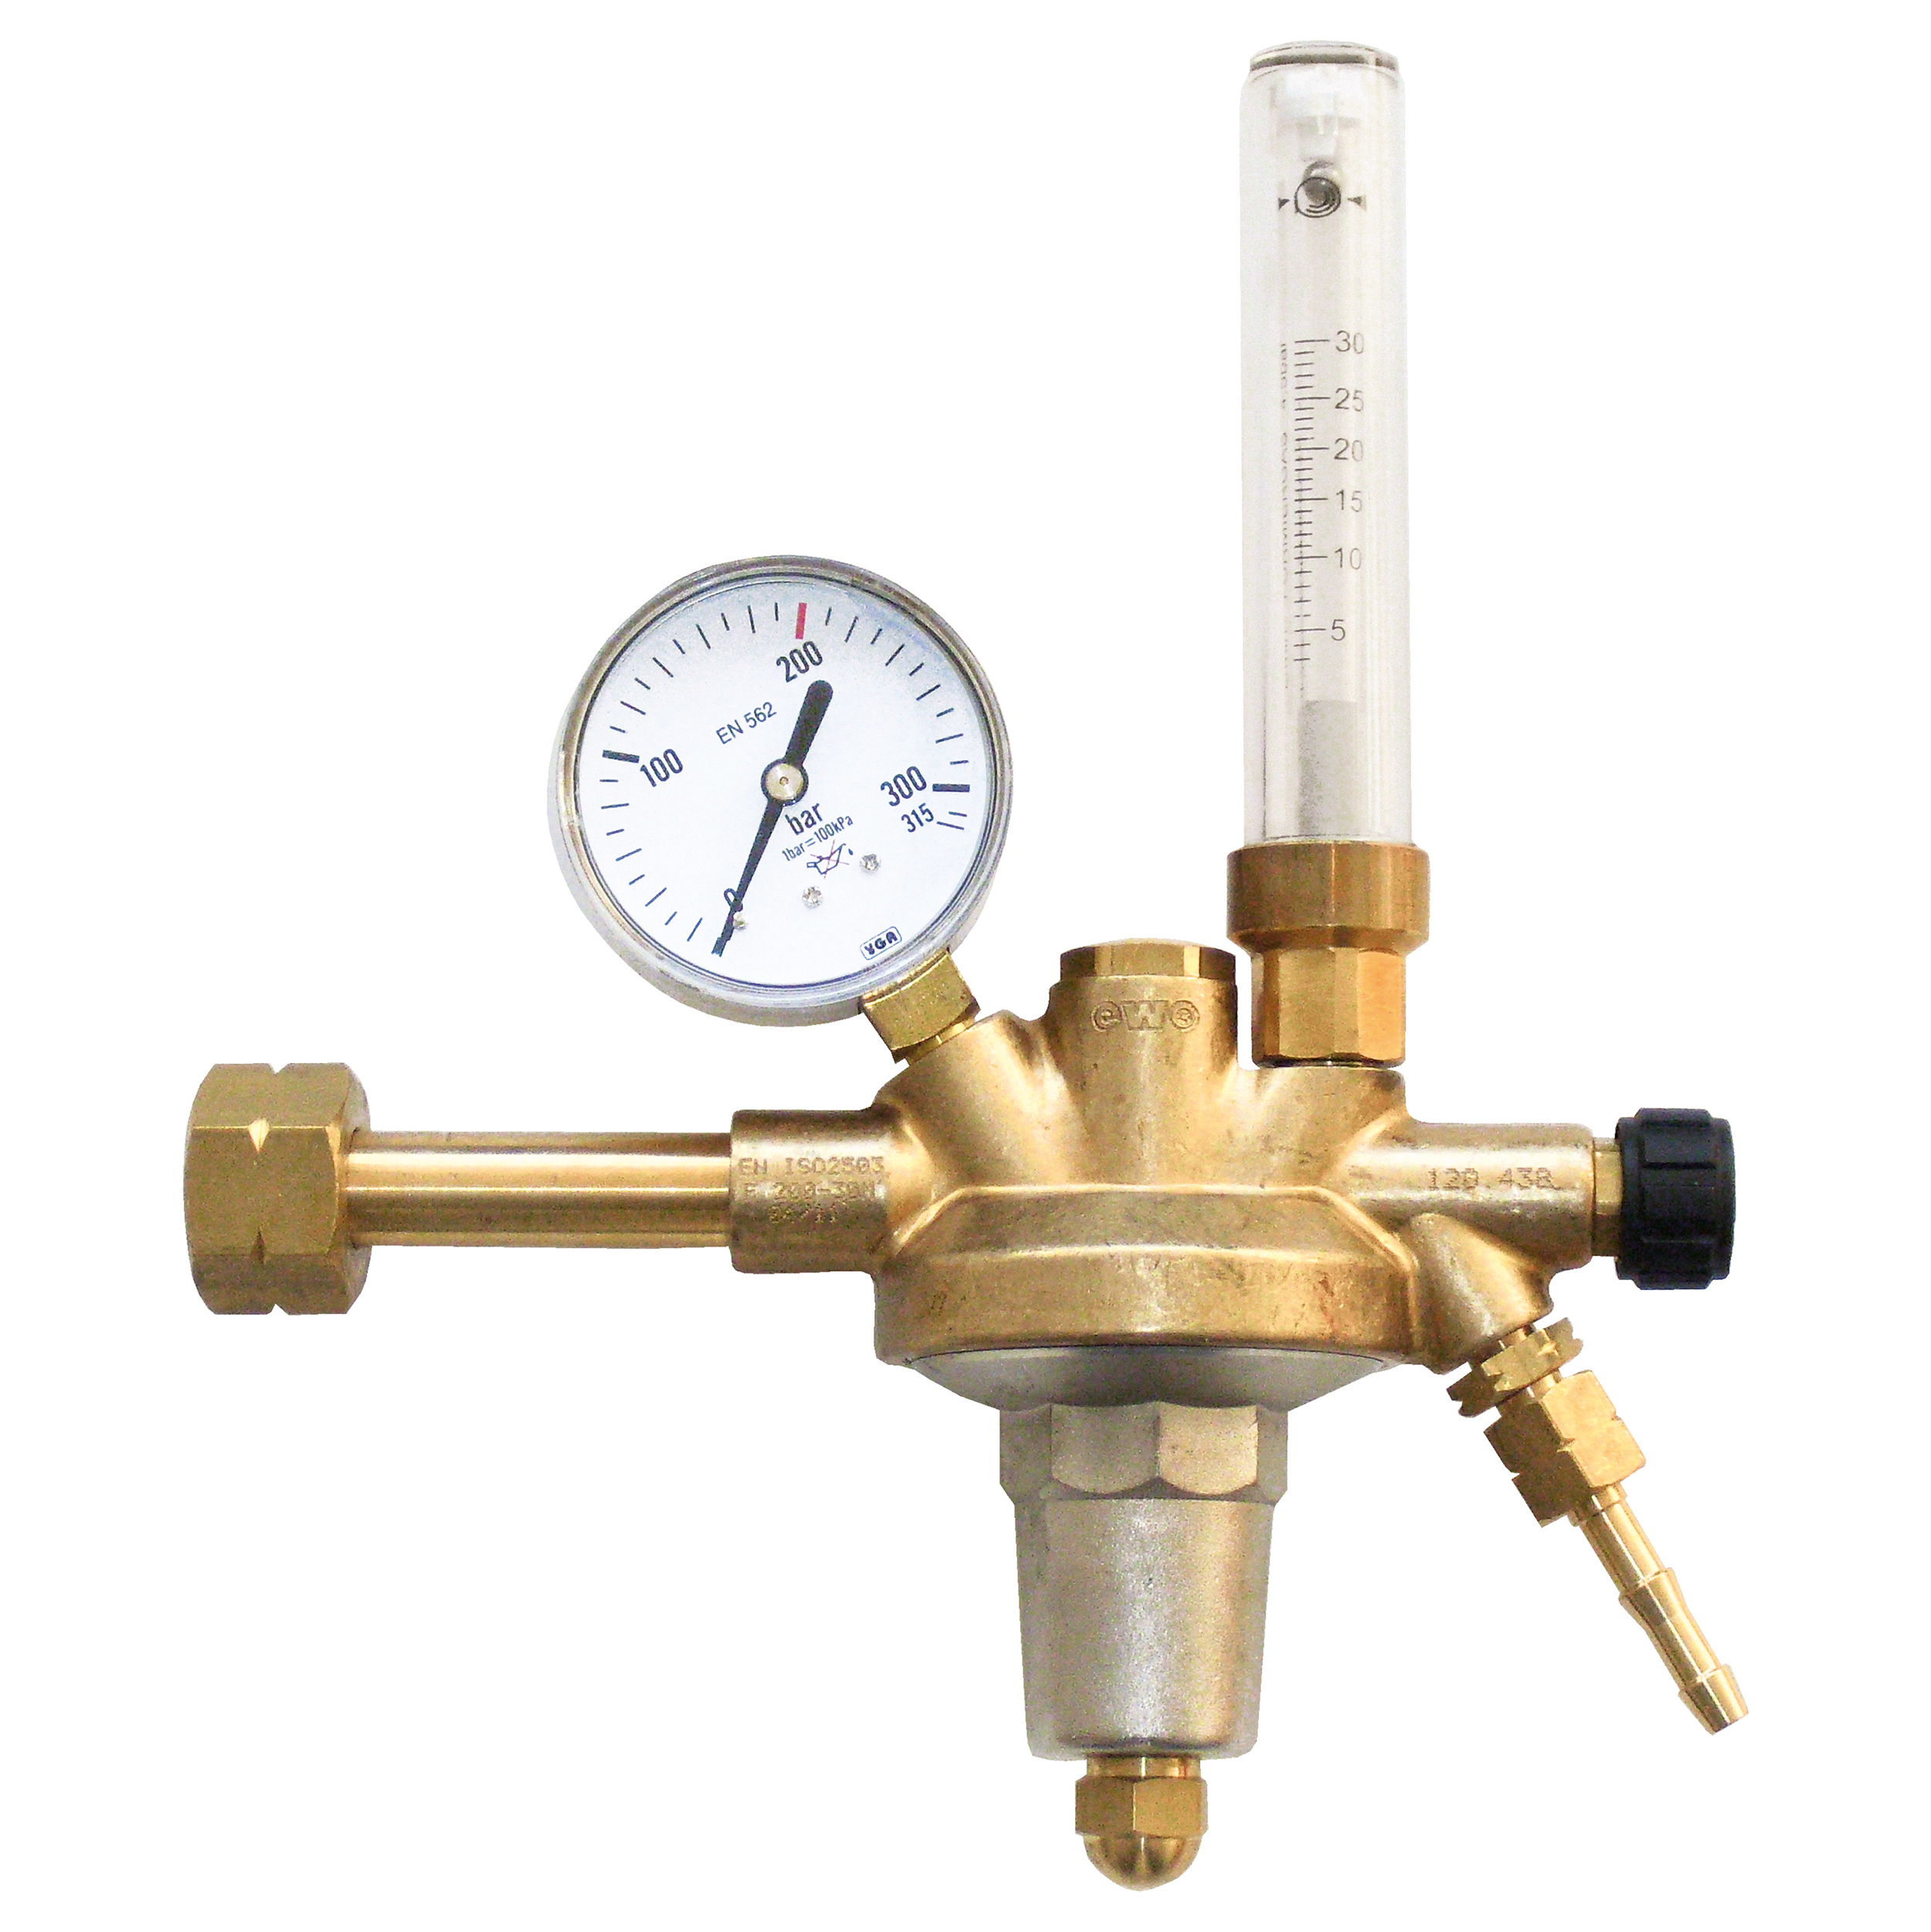 Pressure regulator , bottled gas, volume meter, single stage, burn gas, Inert gases, pressure gauge 0-22/32, W21,8x1/14"LHi